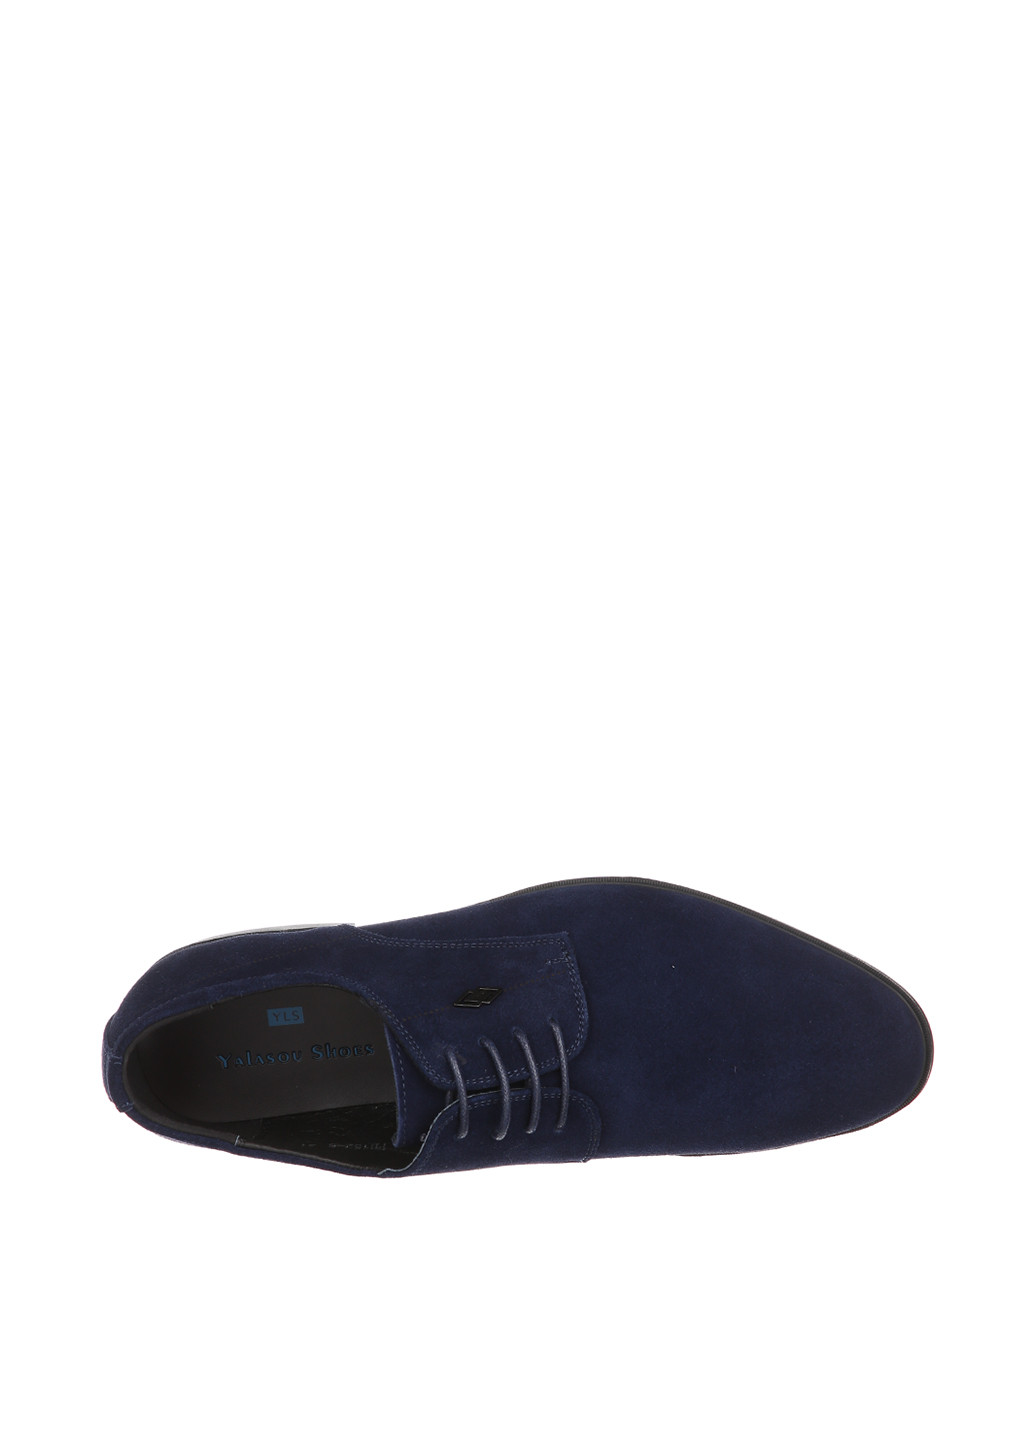 Синие классические туфли Yalasou на шнурках